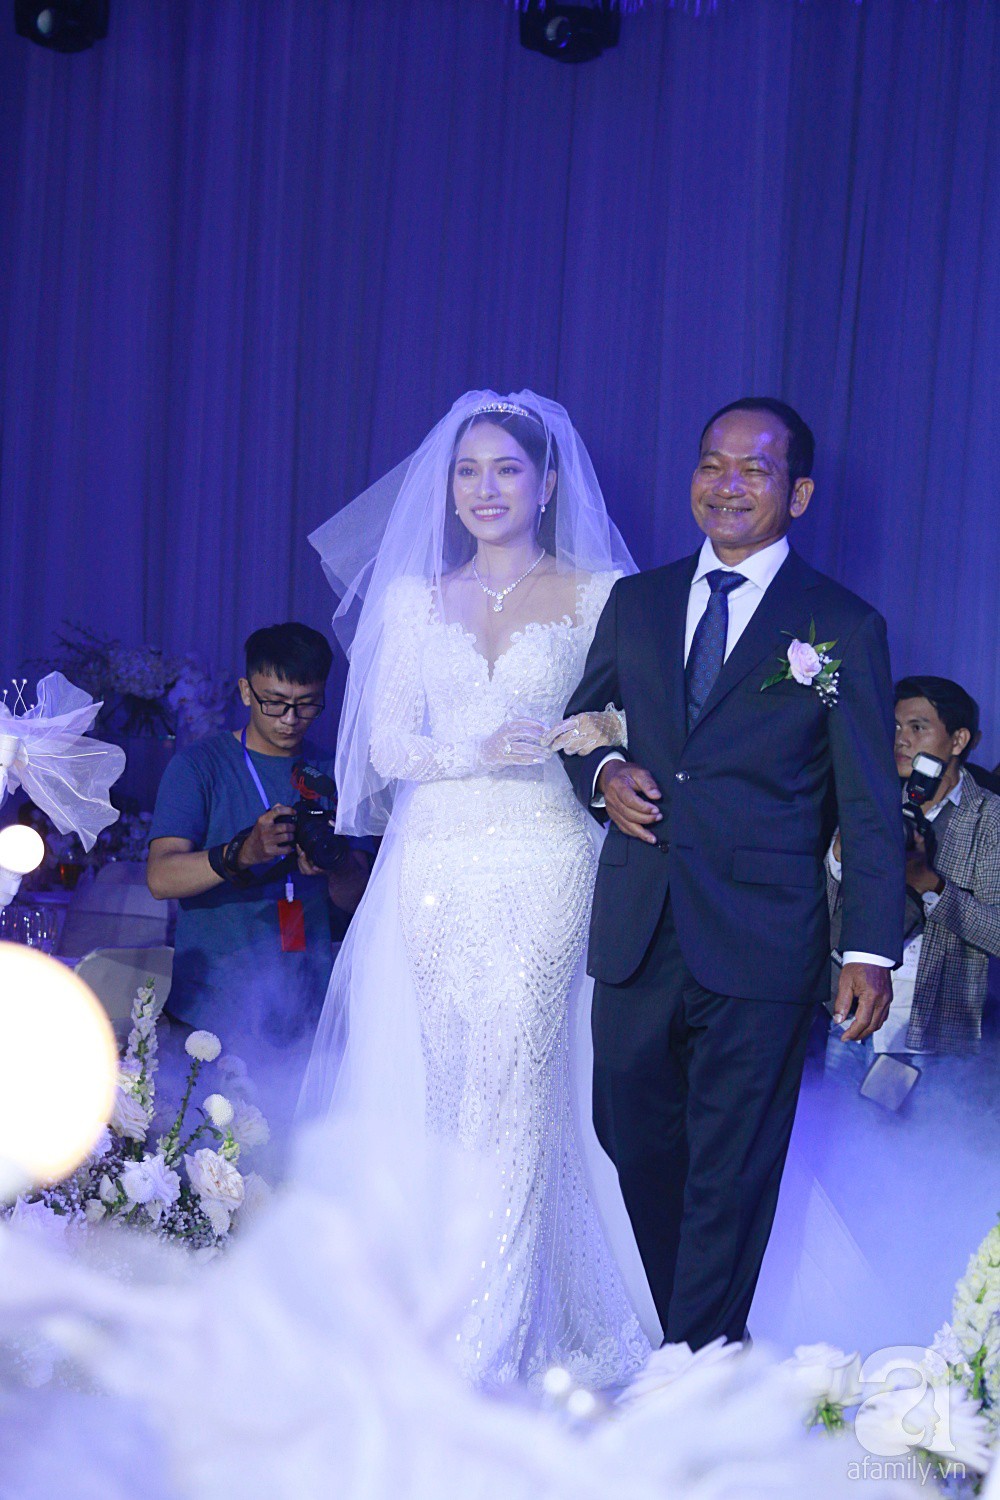 Tiệc cưới chính thức bắt đầu, cô dâu Sara Lưu âu yếm lau nhẹ vết son của mình trên môi chú rể Dương Khắc Linh-5